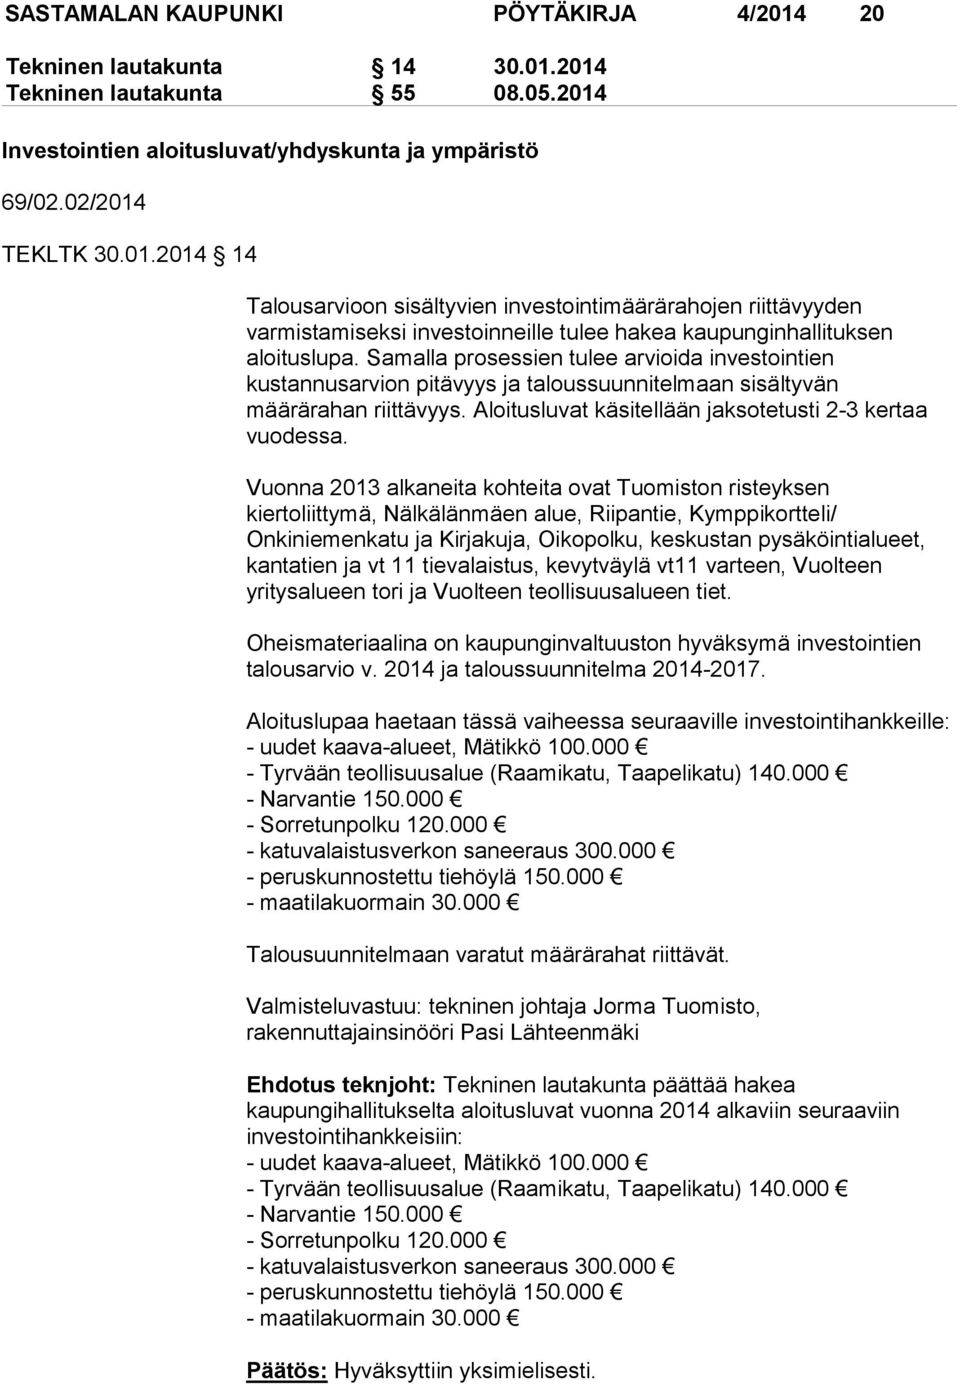 Vuonna 2013 alkaneita kohteita ovat Tuomiston risteyksen kiertoliittymä, Nälkälänmäen alue, Riipantie, Kymppikortteli/ Onkiniemenkatu ja Kirjakuja, Oikopolku, keskustan pysäköintialueet, kantatien ja